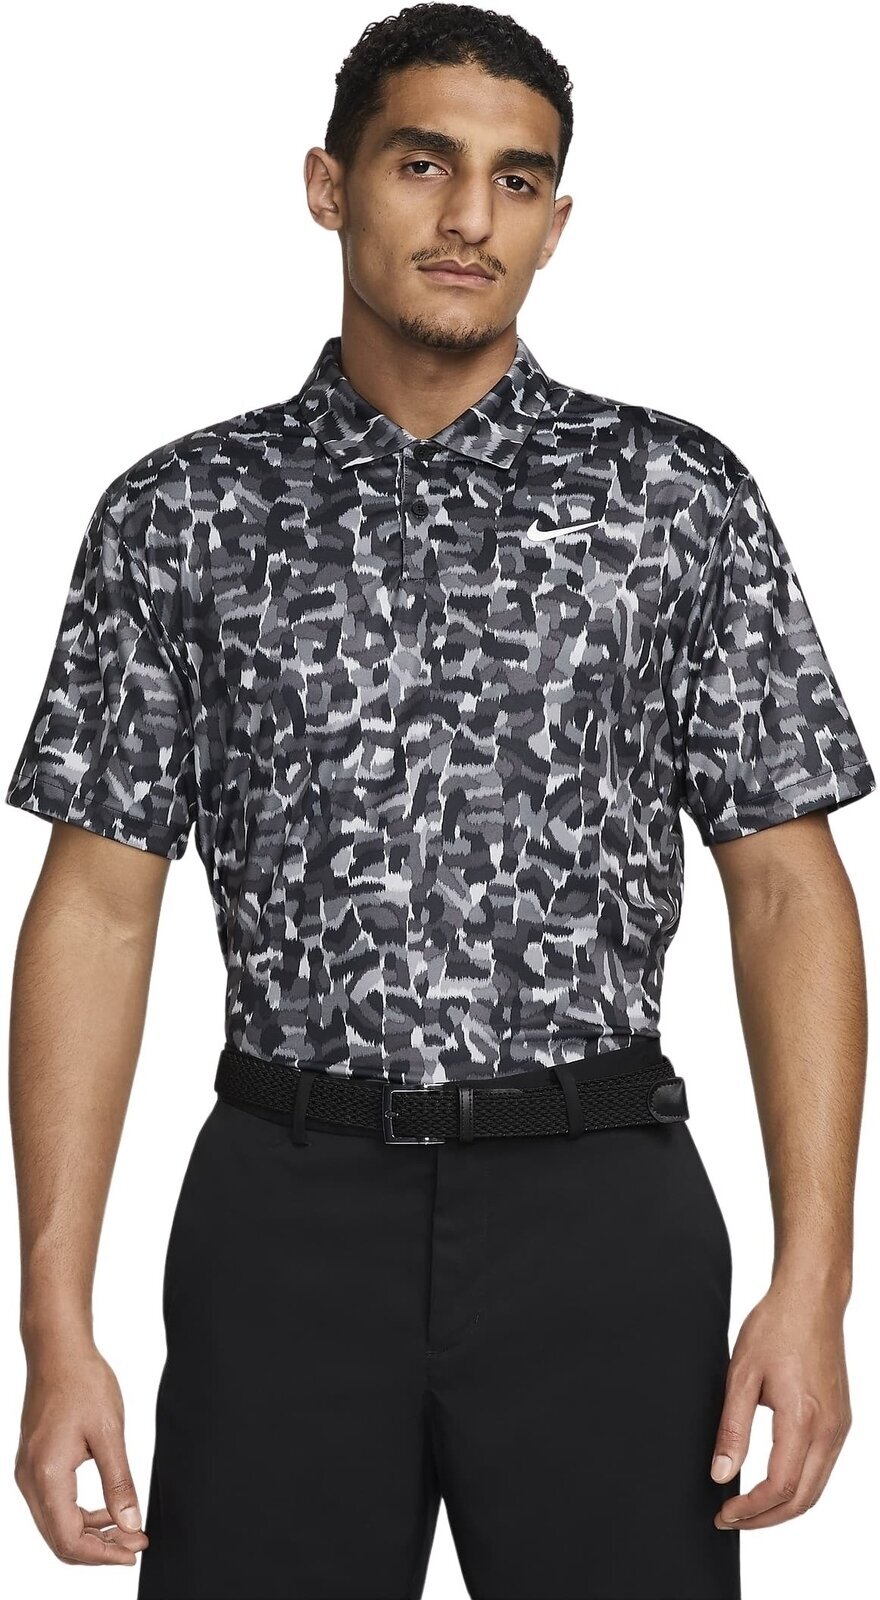 Camiseta polo Nike Dri-Fit Tour Confetti Print Mens Polo Light Smoke Grey/White XL Camiseta polo